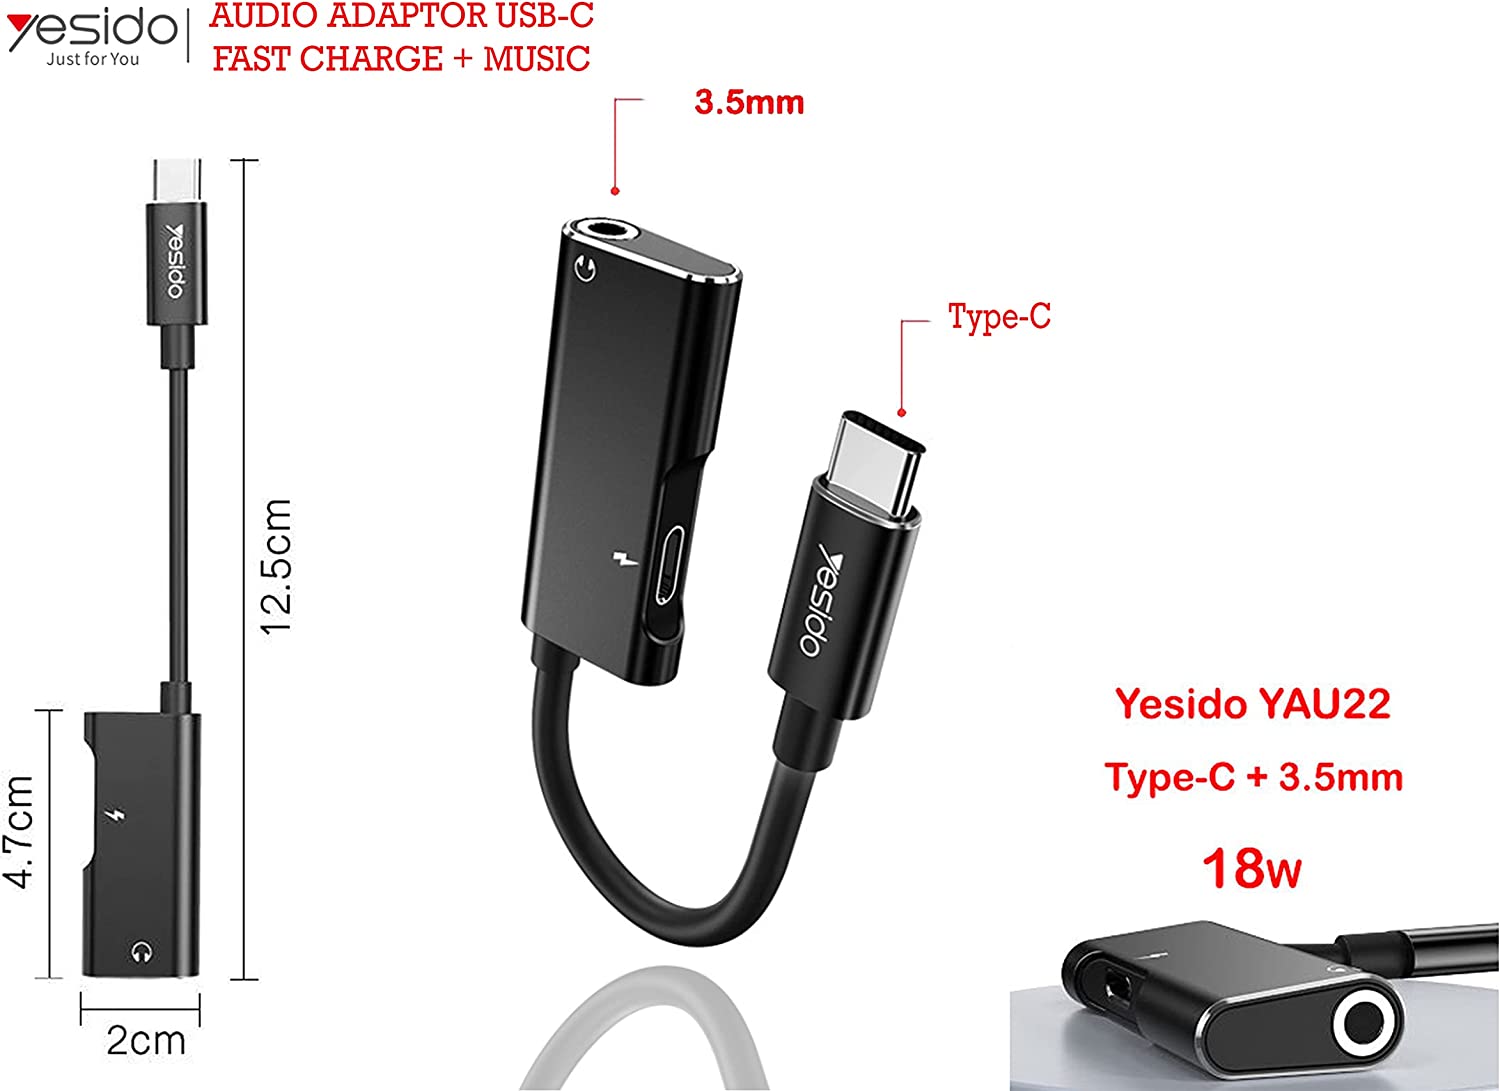 Yesido USB-C Adapter 18W